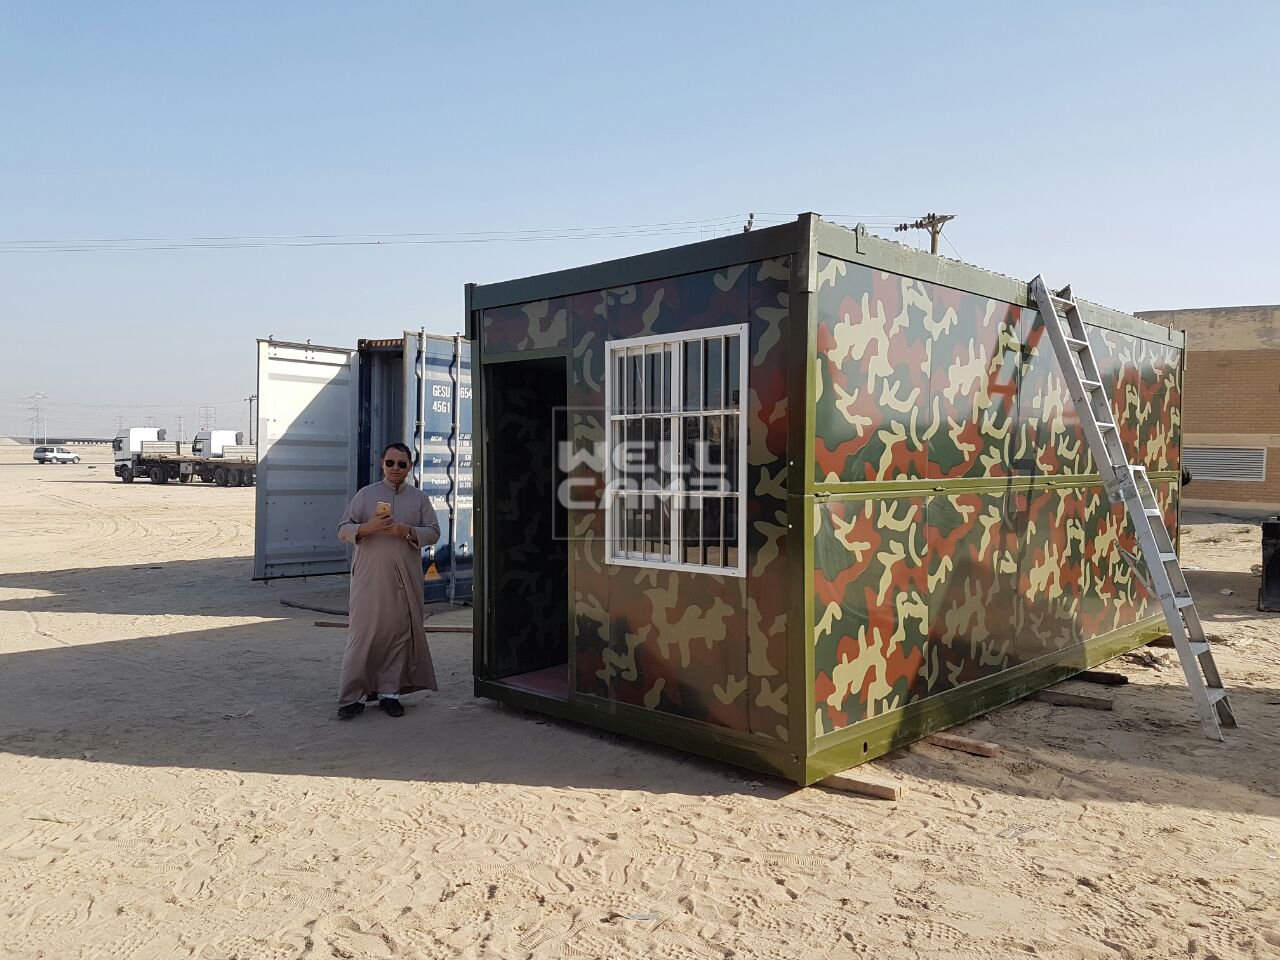 Проект сборного расширяемого контейнерного домика Wellcamp в Кувейте